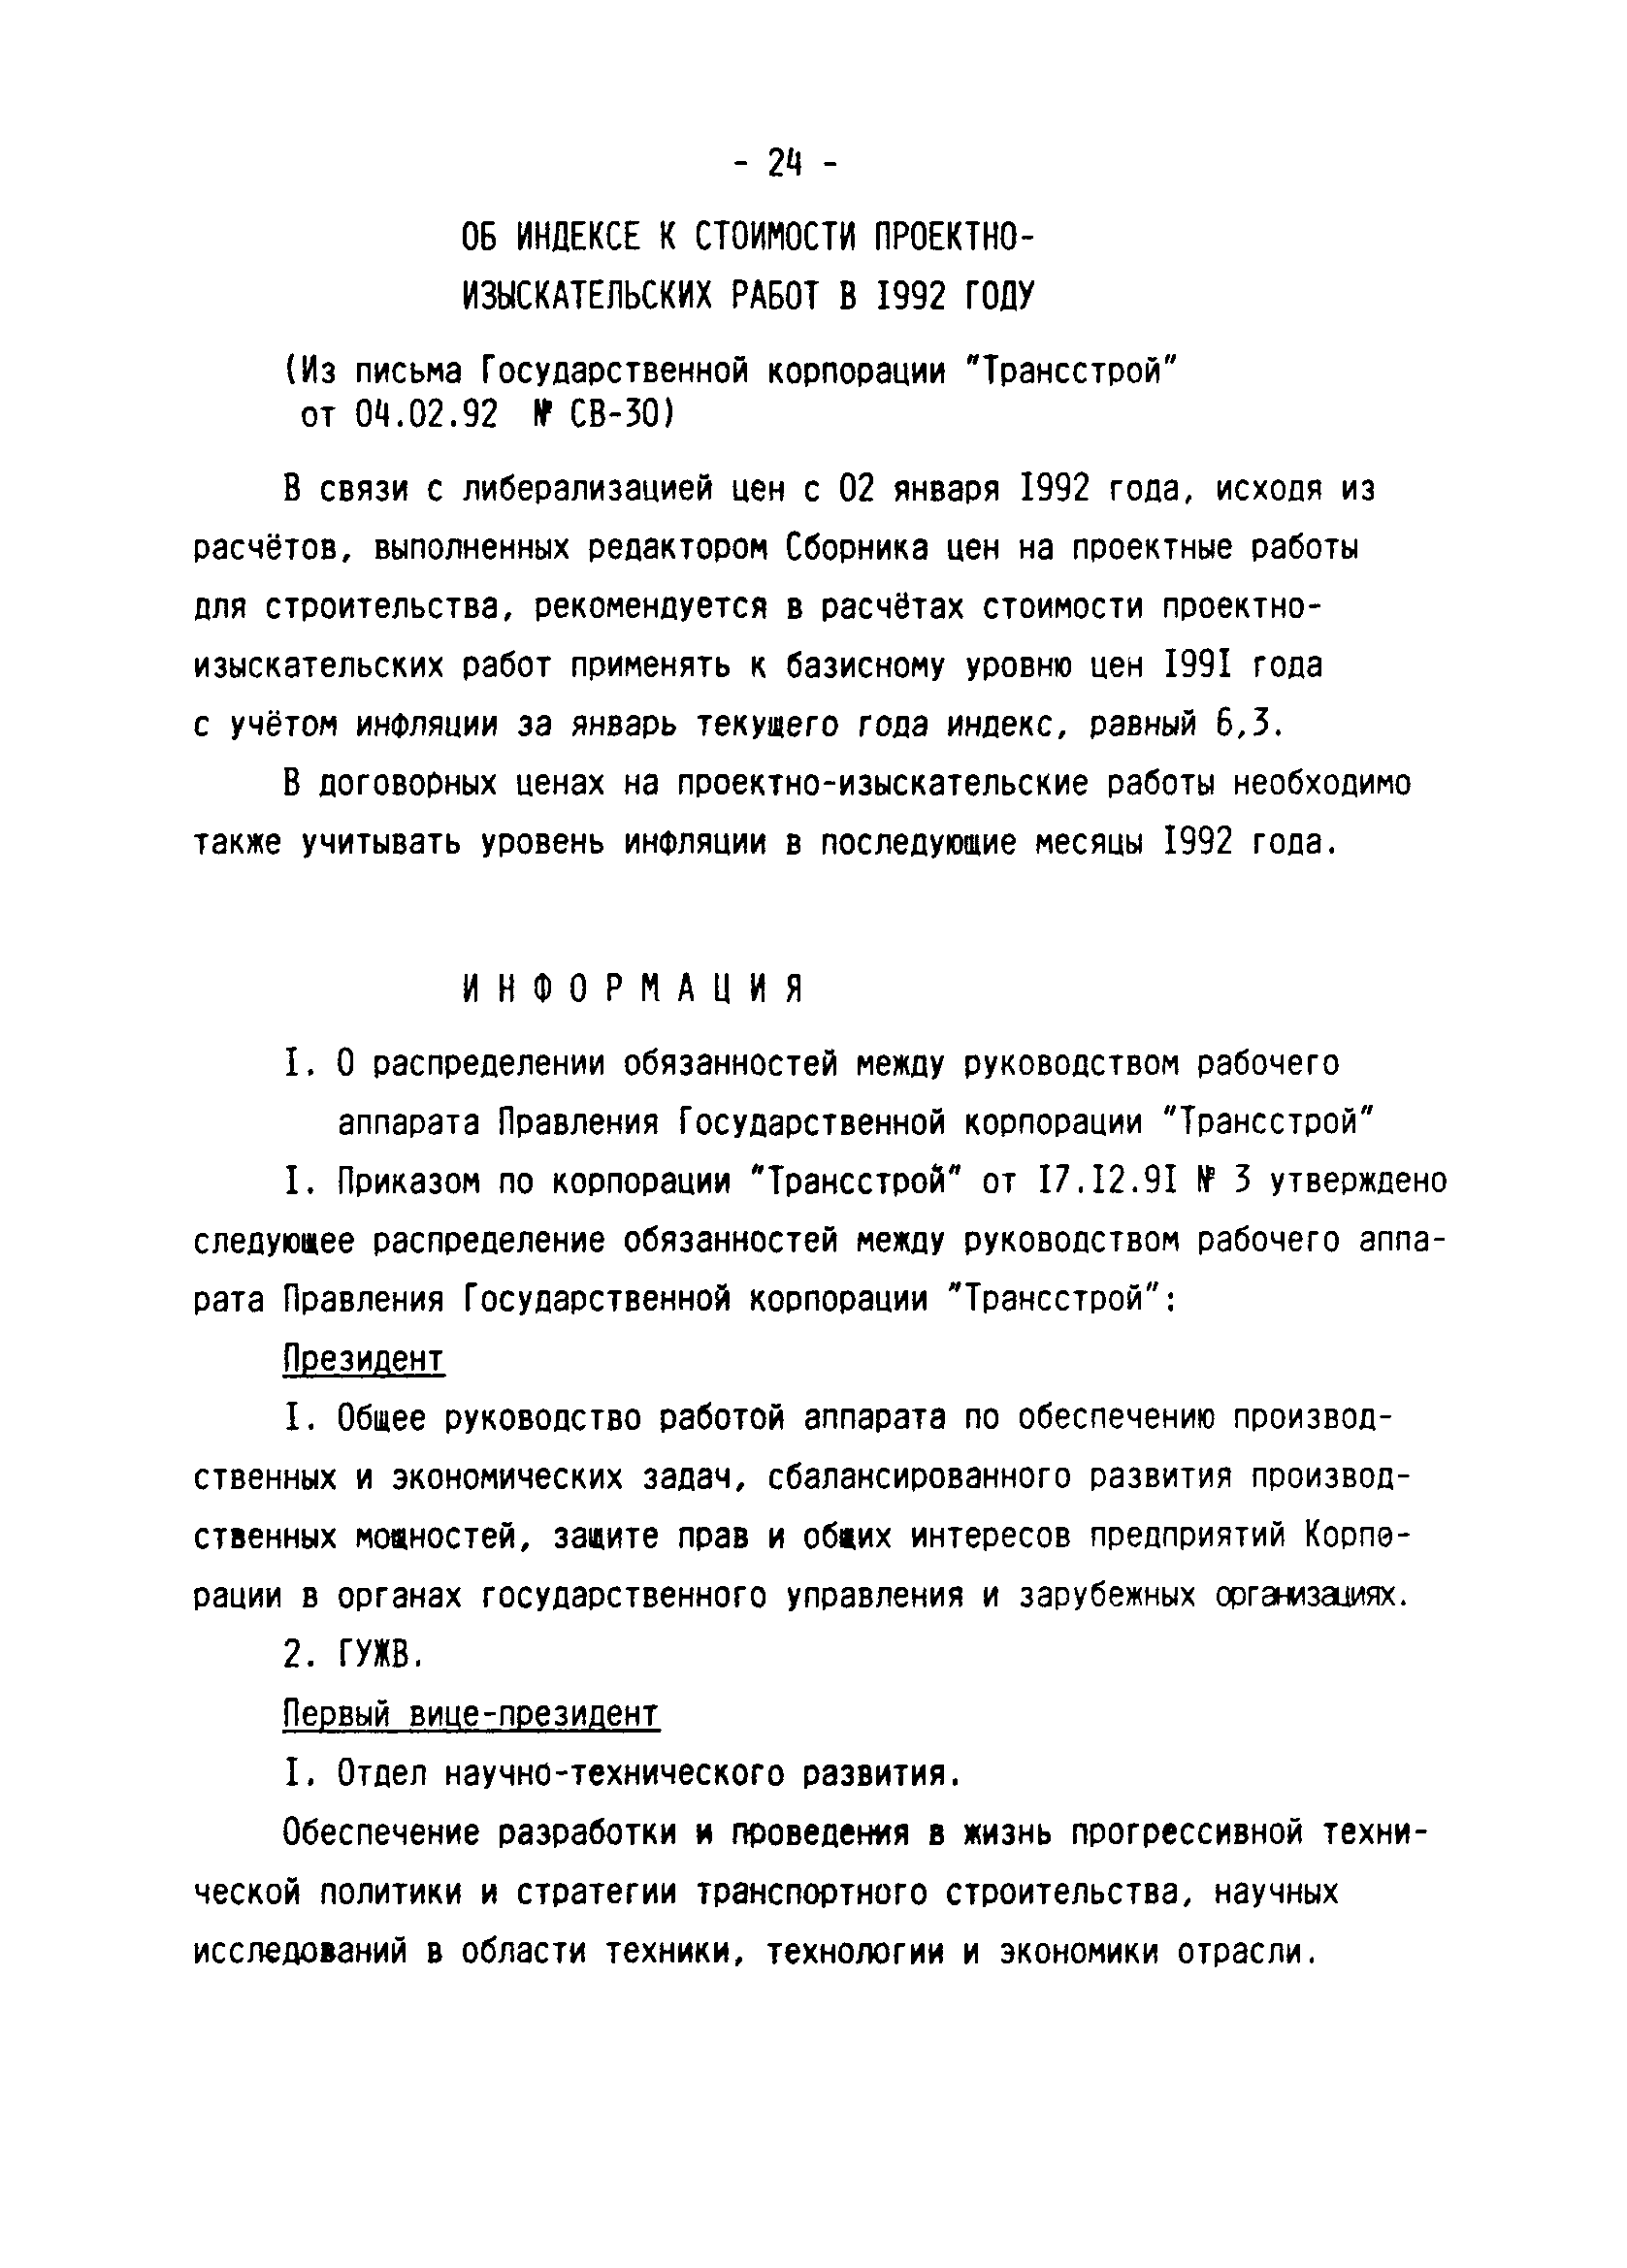 Методические указания 2-92